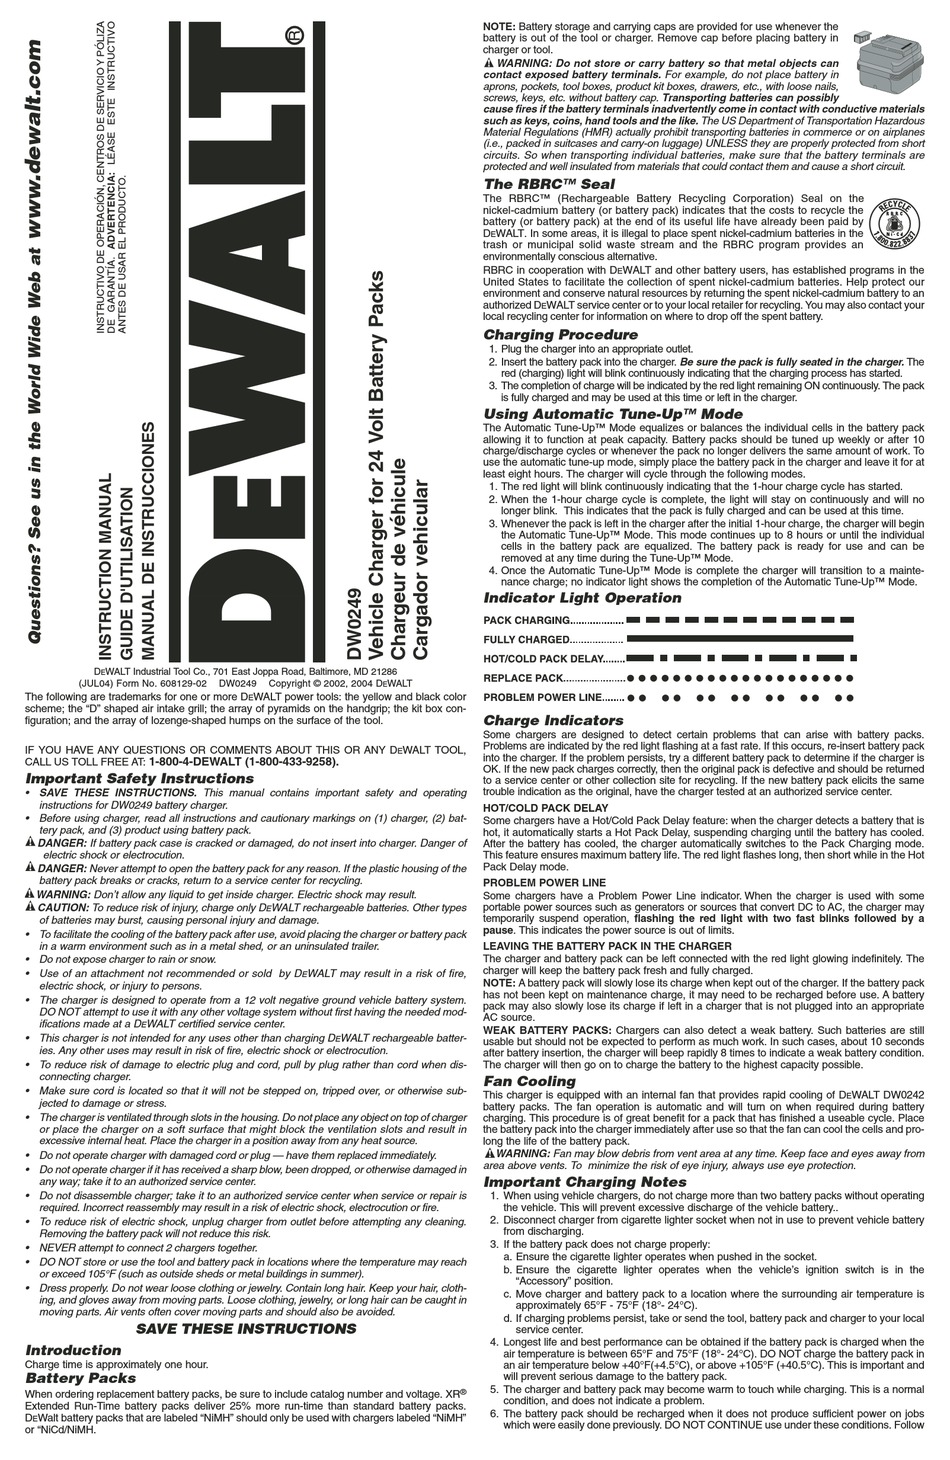 høflighed Melankoli bro DEWALT DW0249 INSTRUCTION MANUAL Pdf Download | ManualsLib